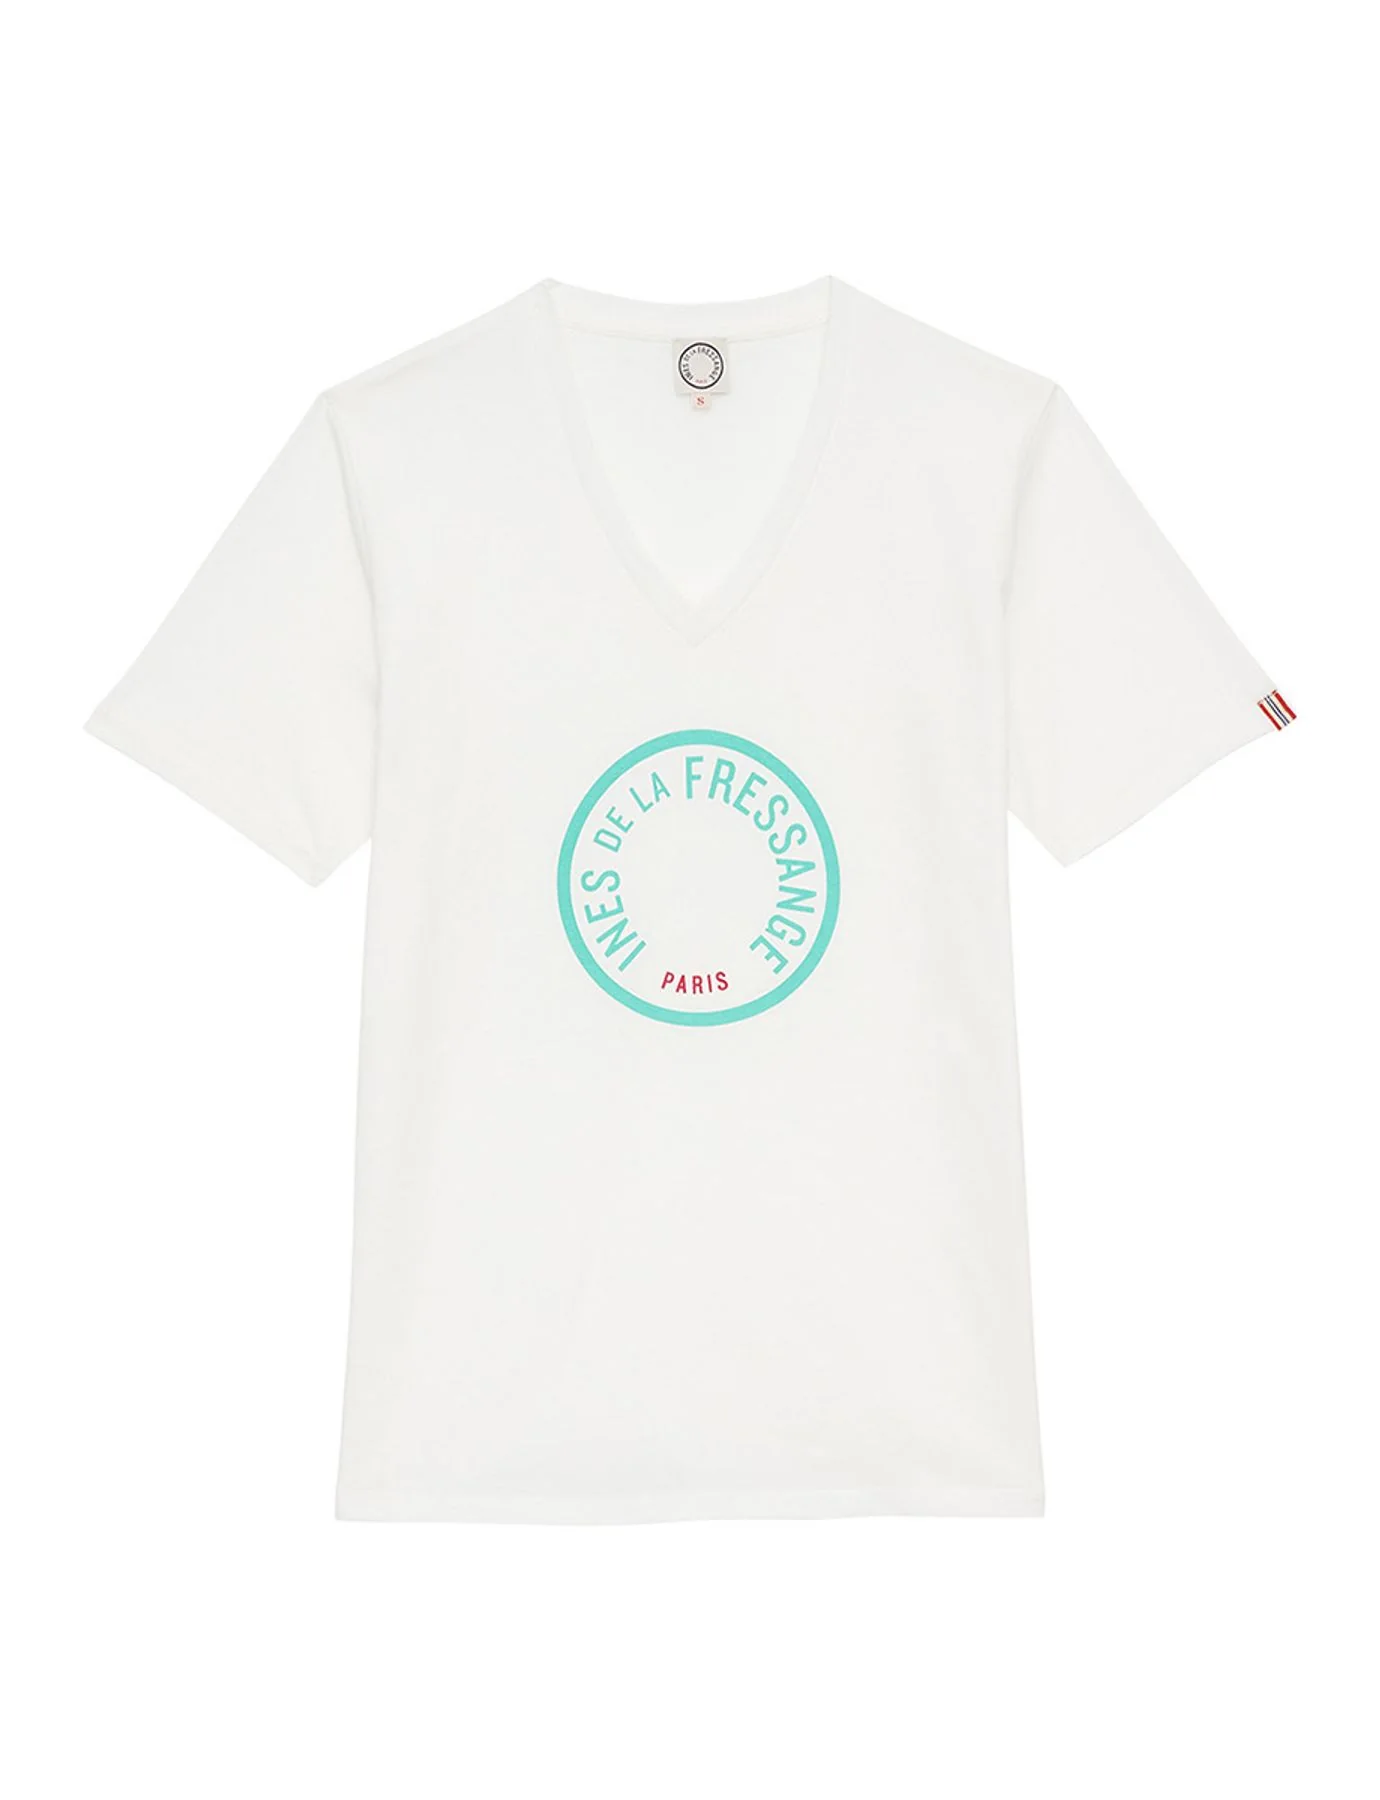 maglietta-pia-bianco-logo-turchese